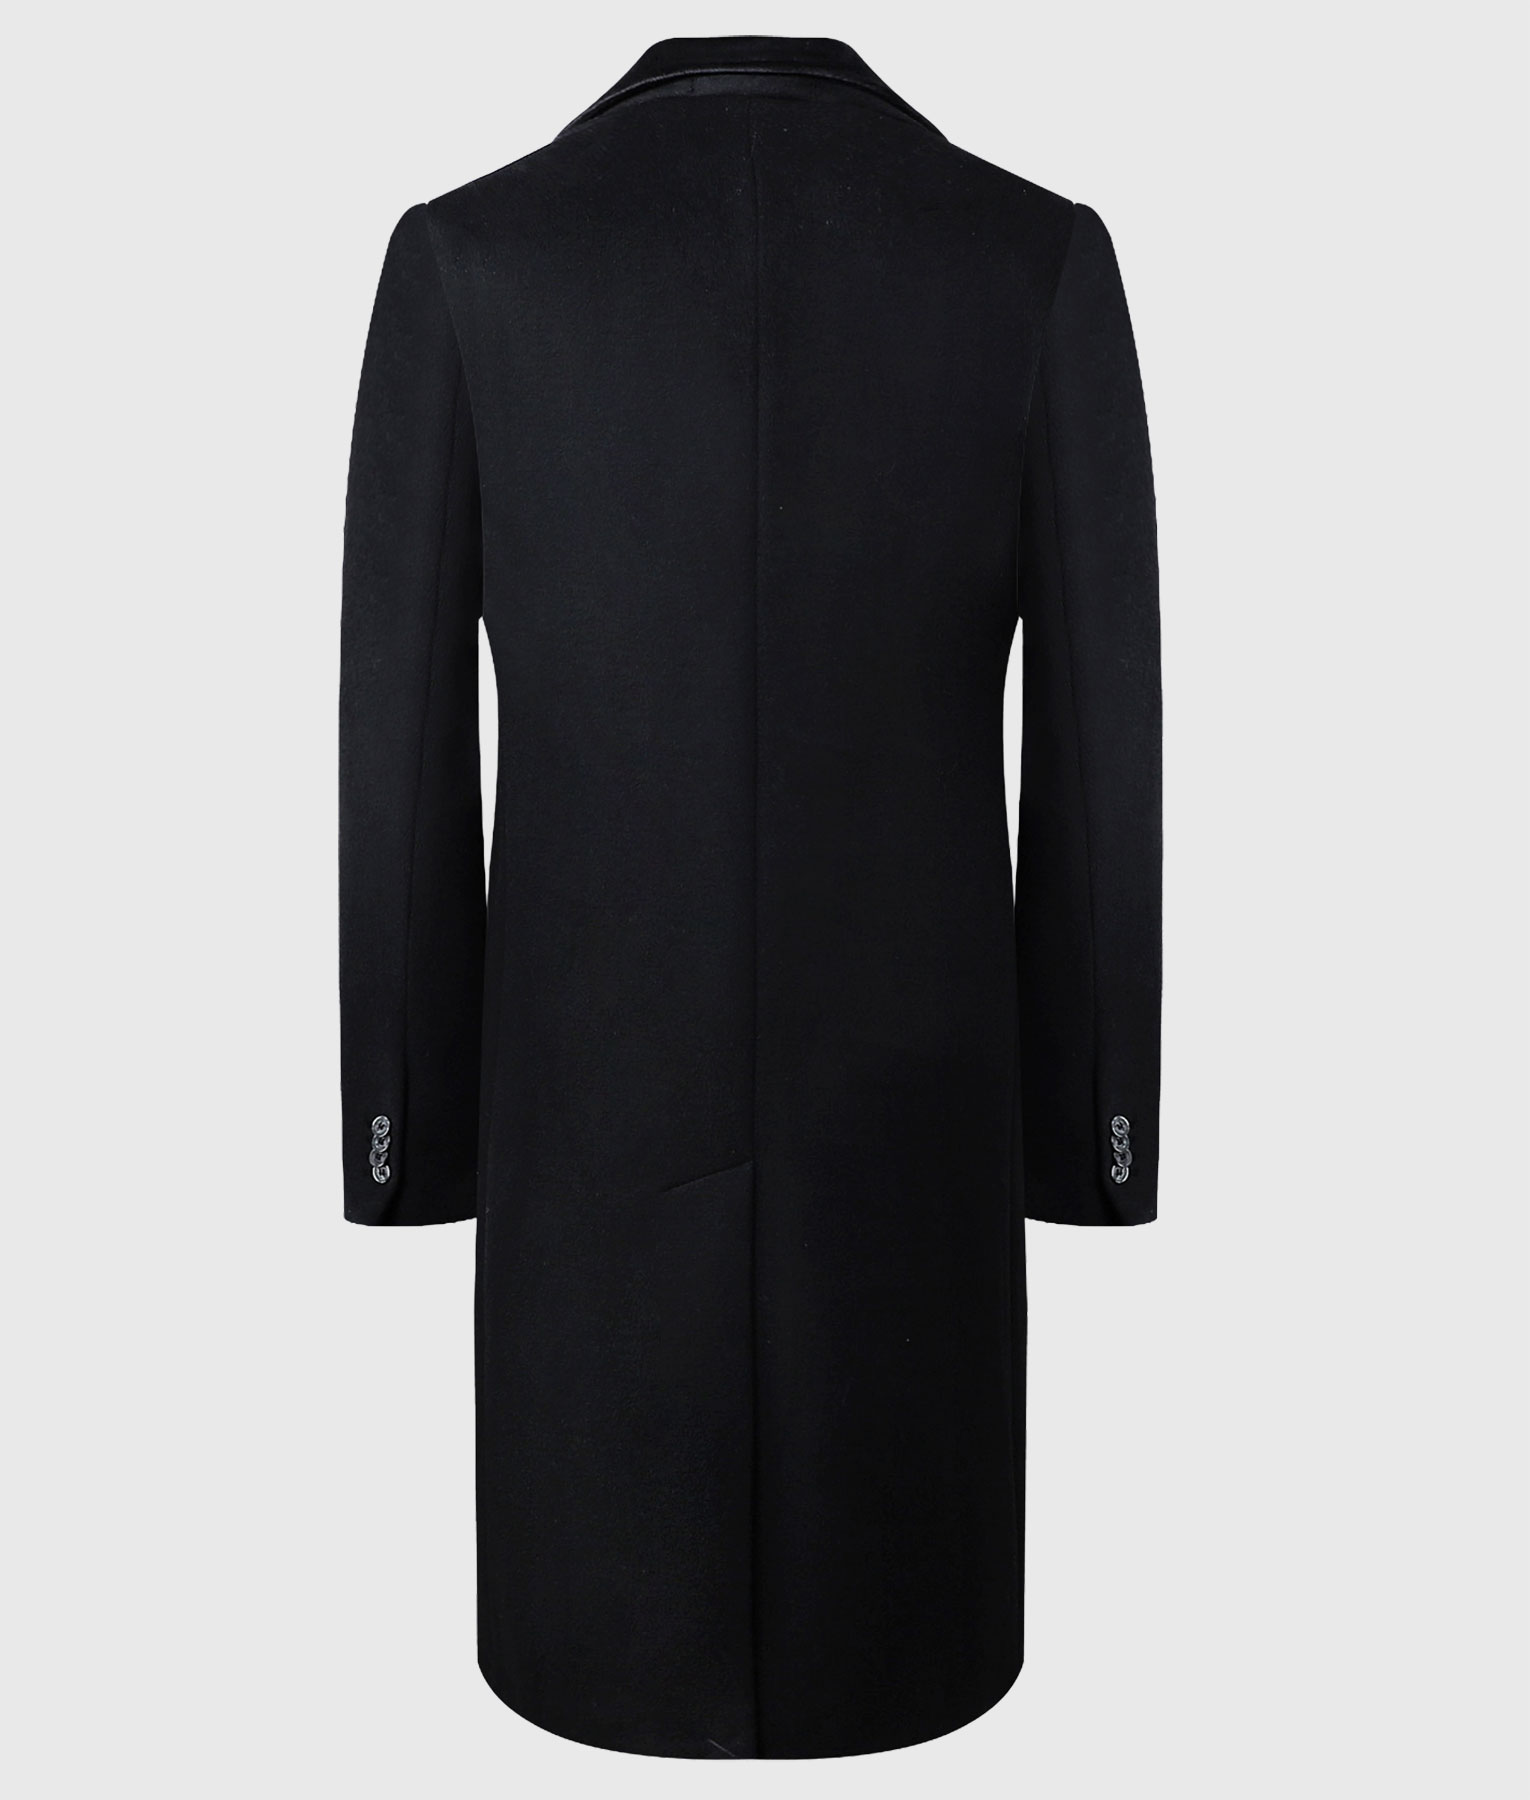 Suits Gabriel Macht Black Coat (4)